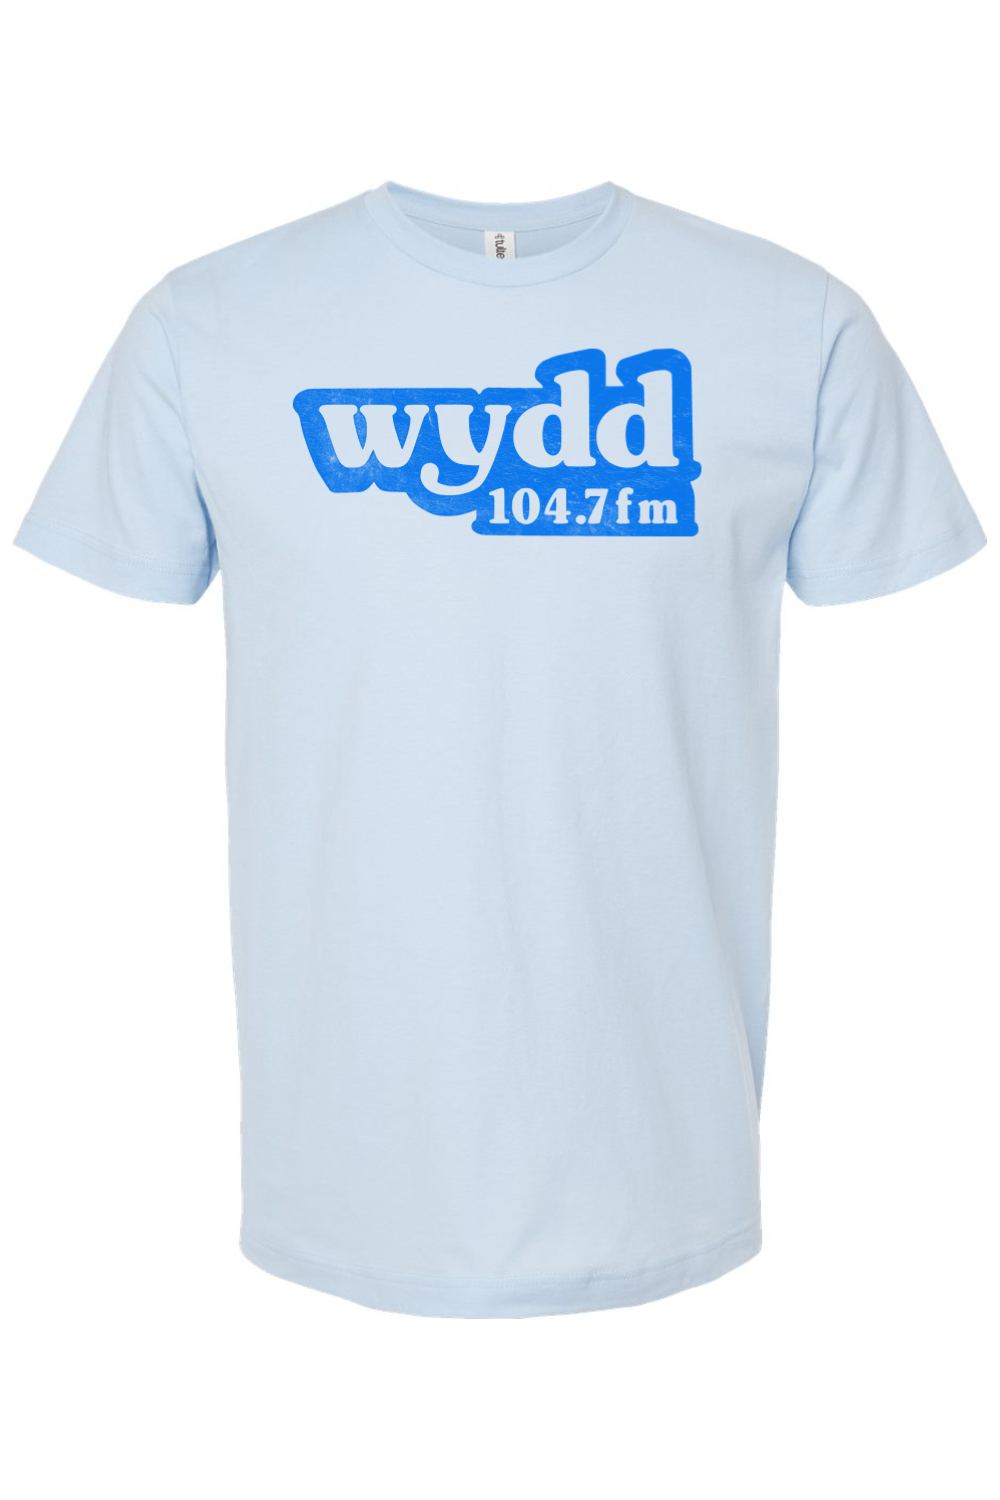 WYDD-FM 104.7 - Pittsburgh - Yinzylvania